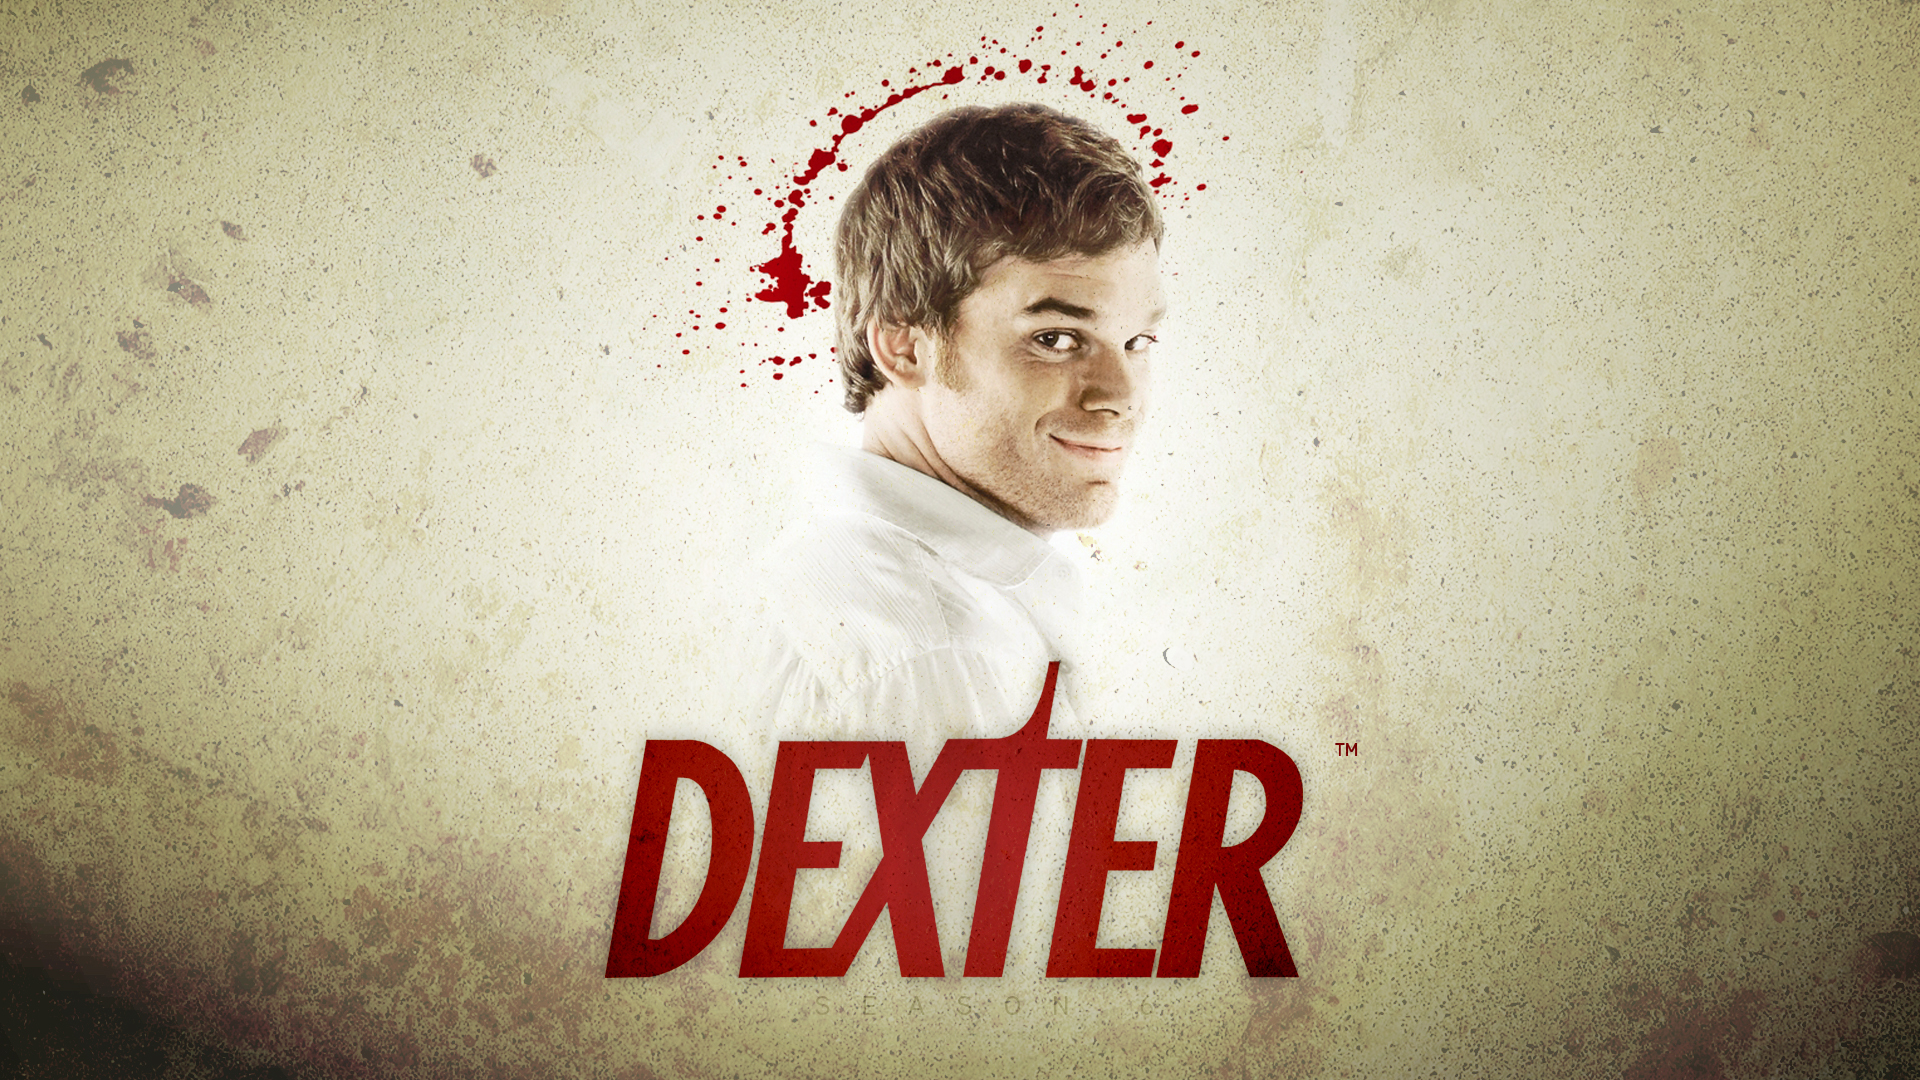 Dexter Season Wallpaper HD By Inickeon